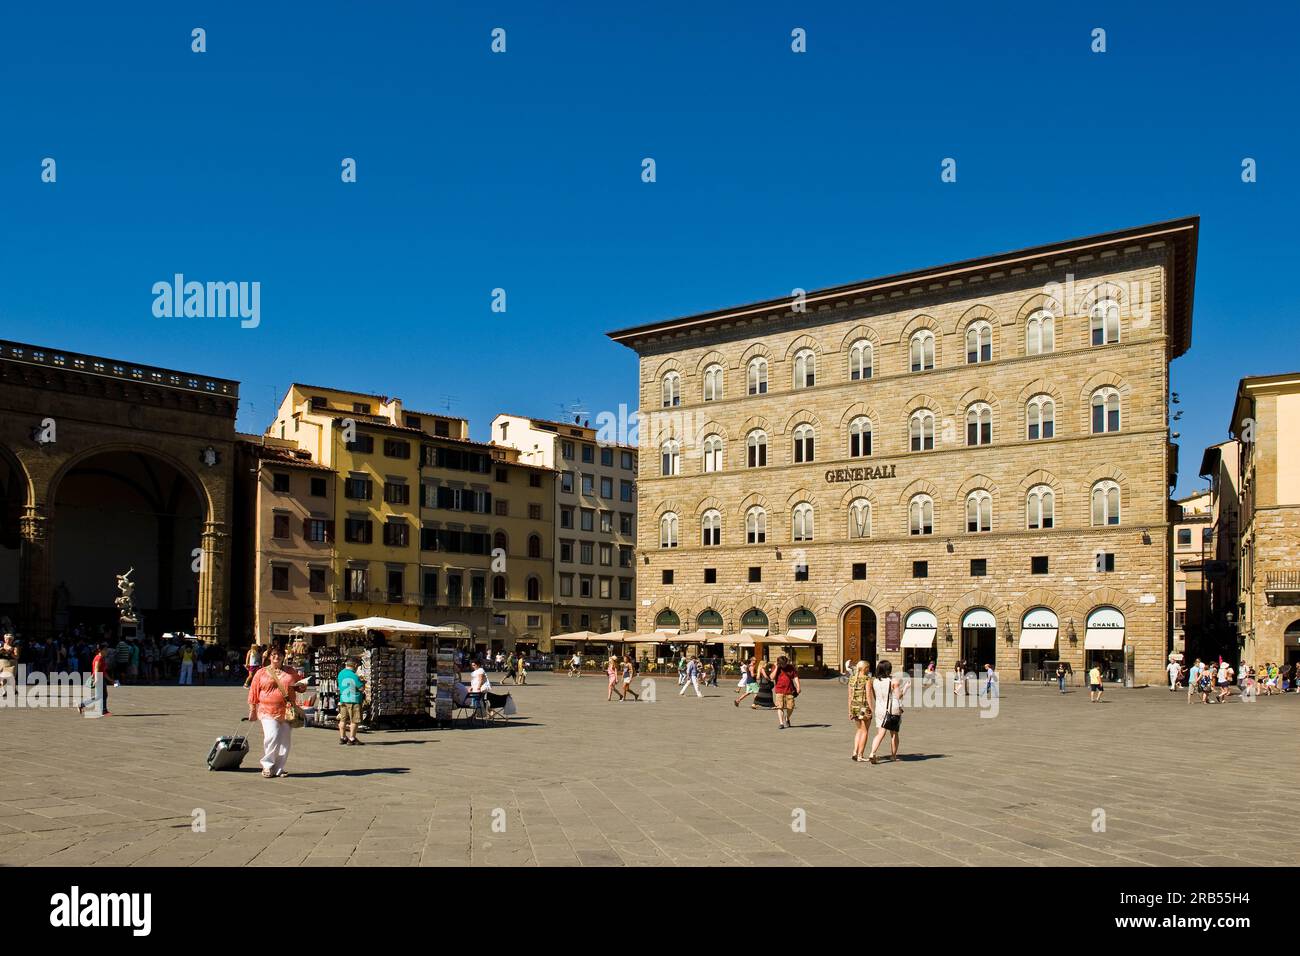 Palazzo delle assicurazioni generali. piazza della signoria. Florence. Tuscany Stock Photo